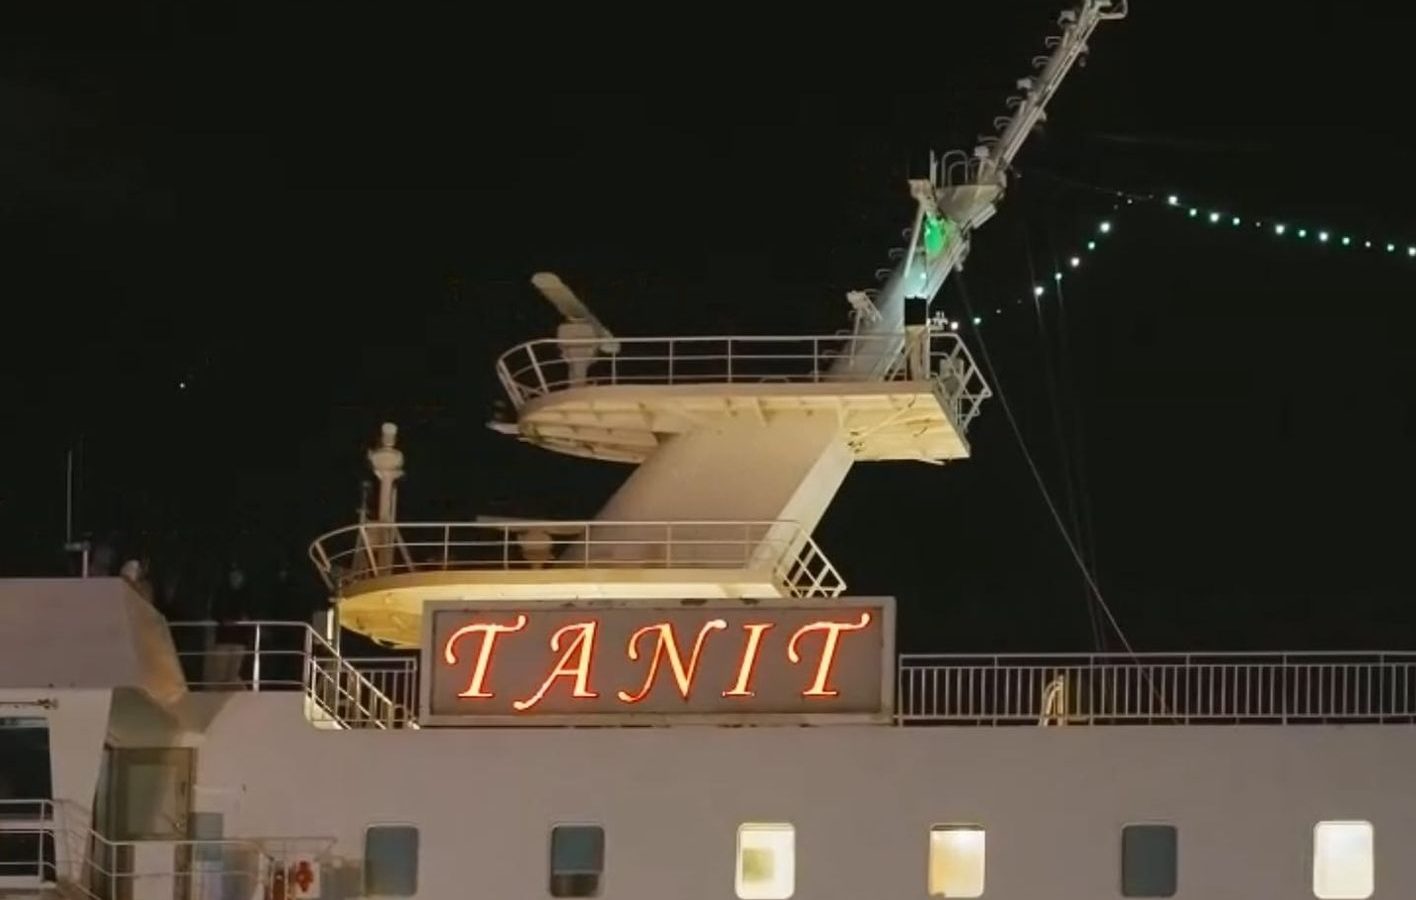 تأخير انطلاق رحلة السفينة “تانيت” باتجاه جنوة